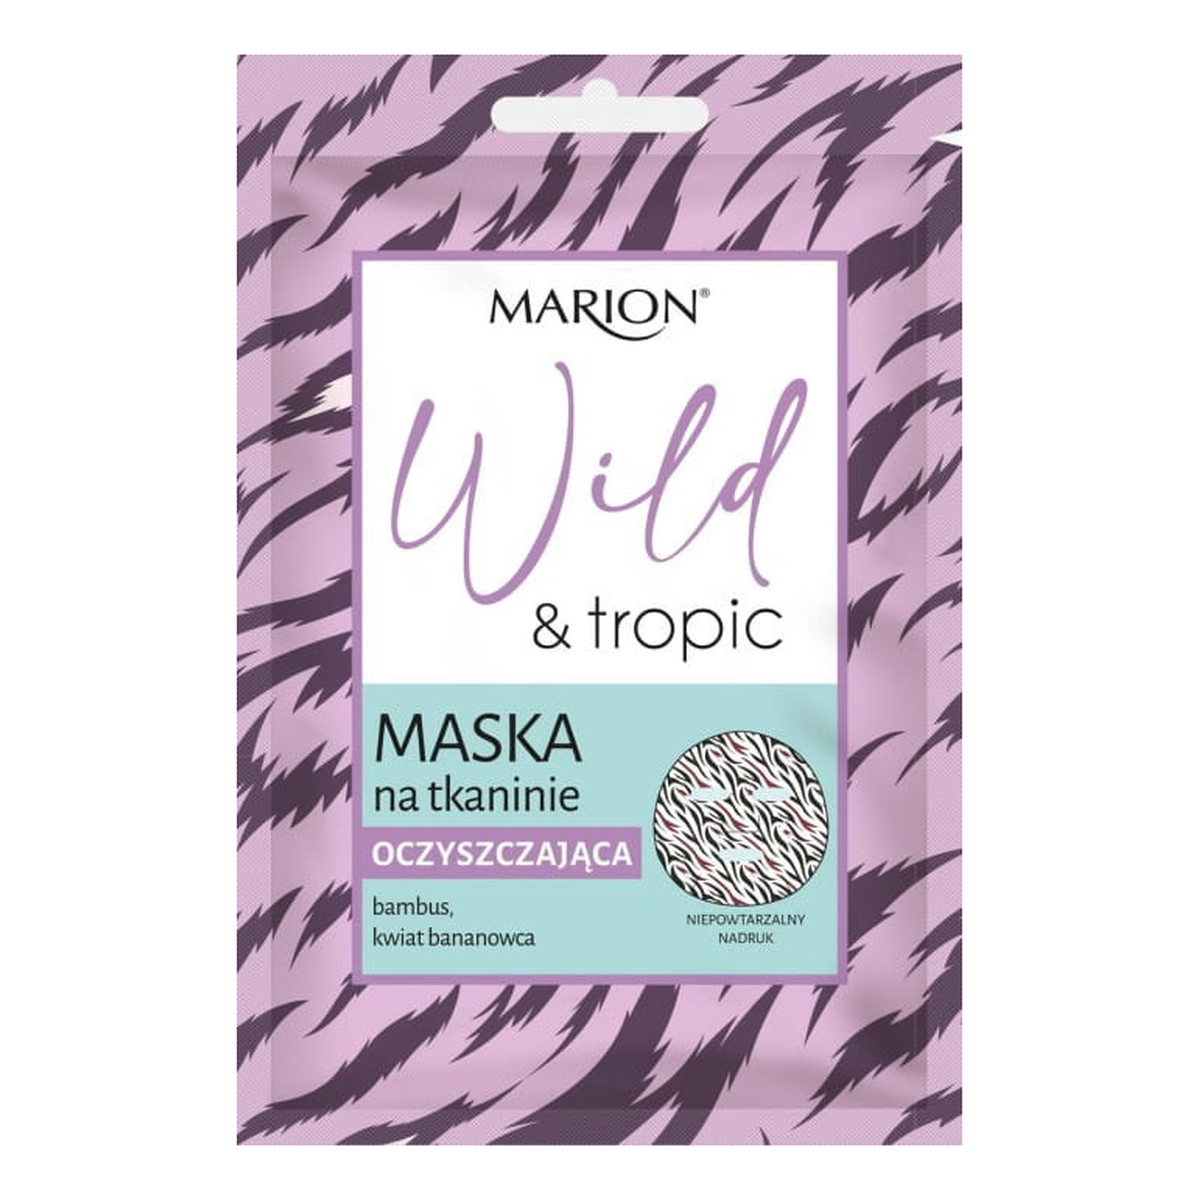 Marion Wild&tropic Maska oczyszczająca